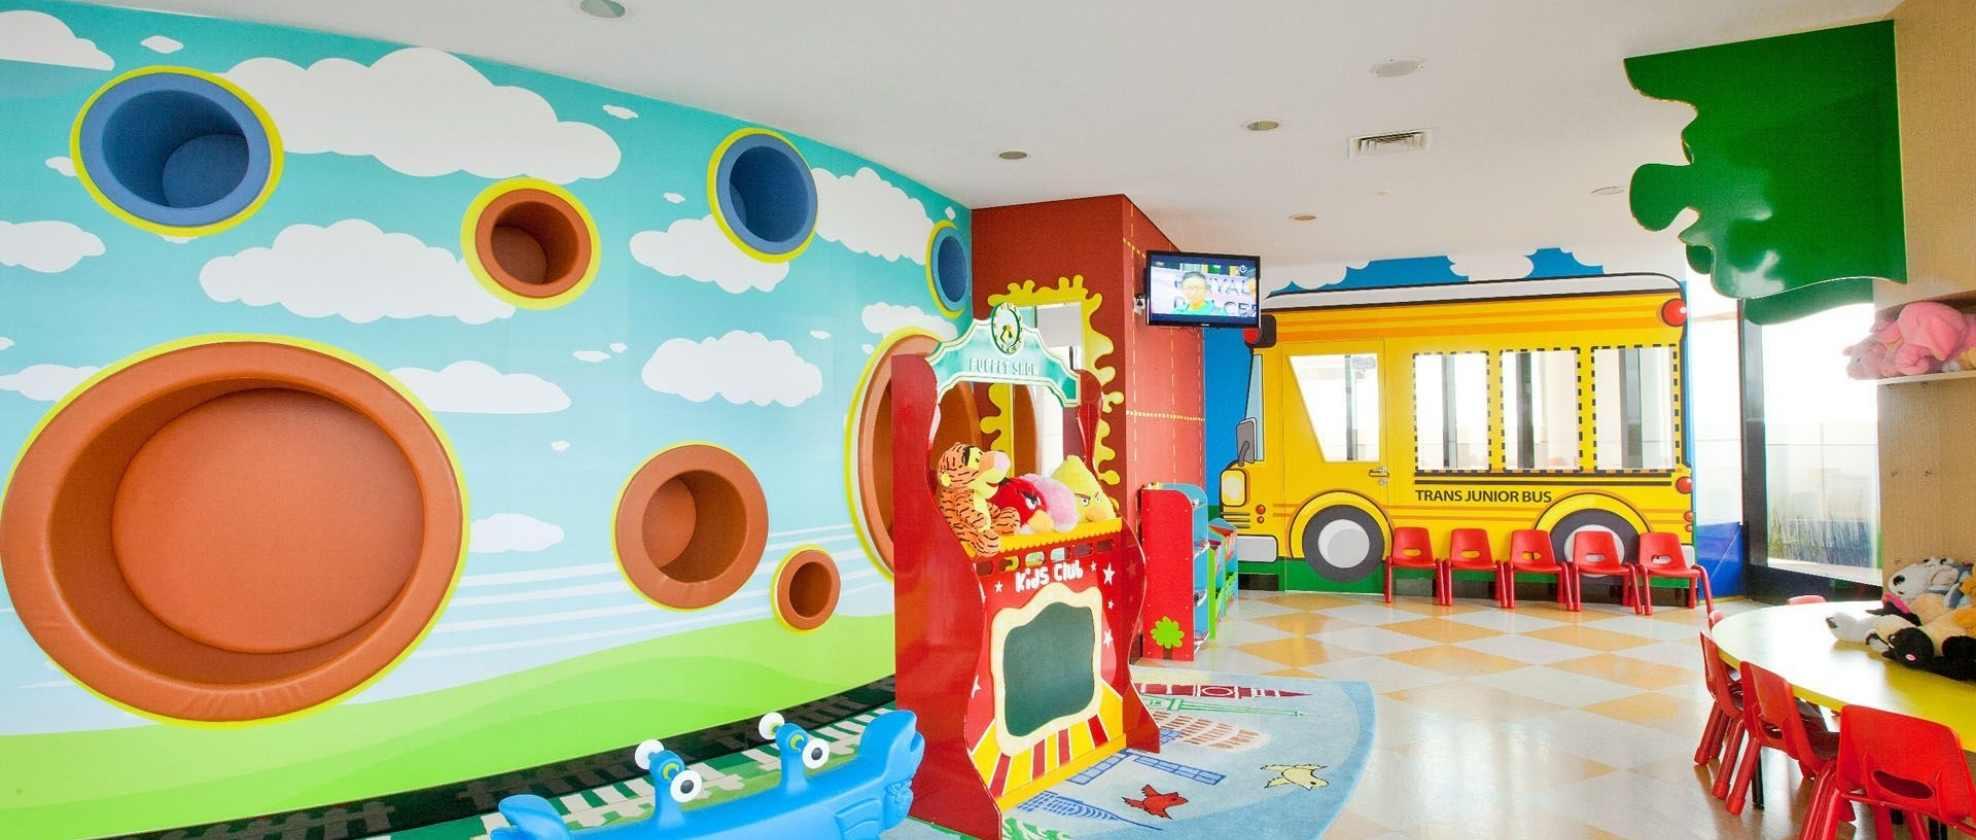 05 xx Hotel Ramah Anak di Bandung untuk Liburan Bersama Si Kecil.jpg